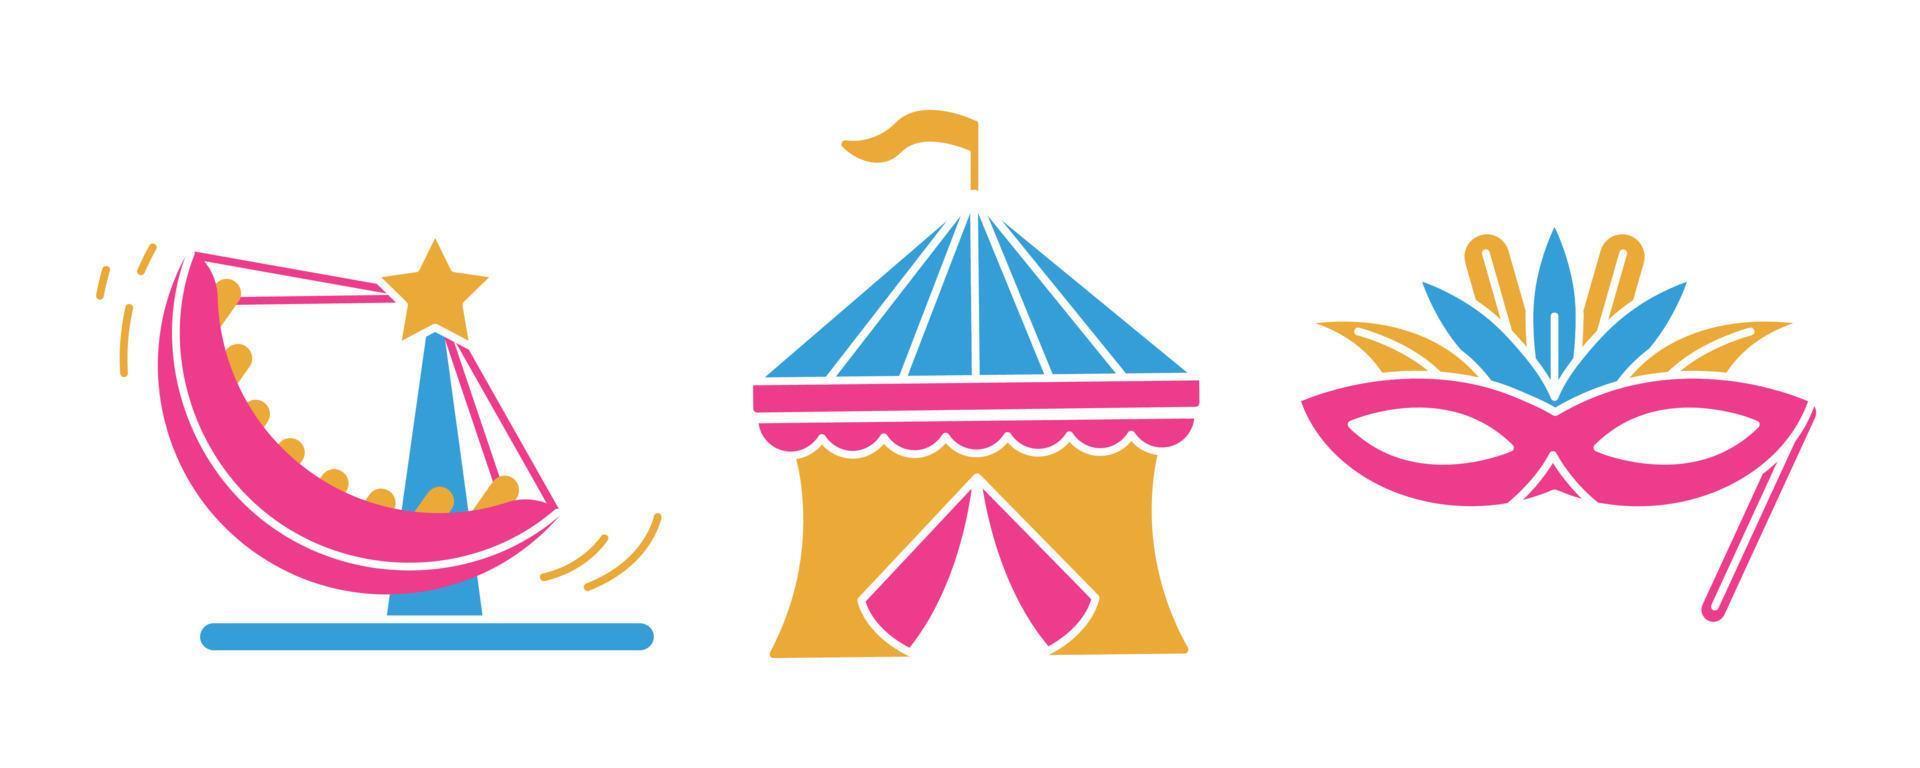 festival tenda-camp, cena do festival e conjunto de ícones de gôndola do parque de diversões. conjunto de ícones de festival e evento. conjunto de ícones coloridos. vetor